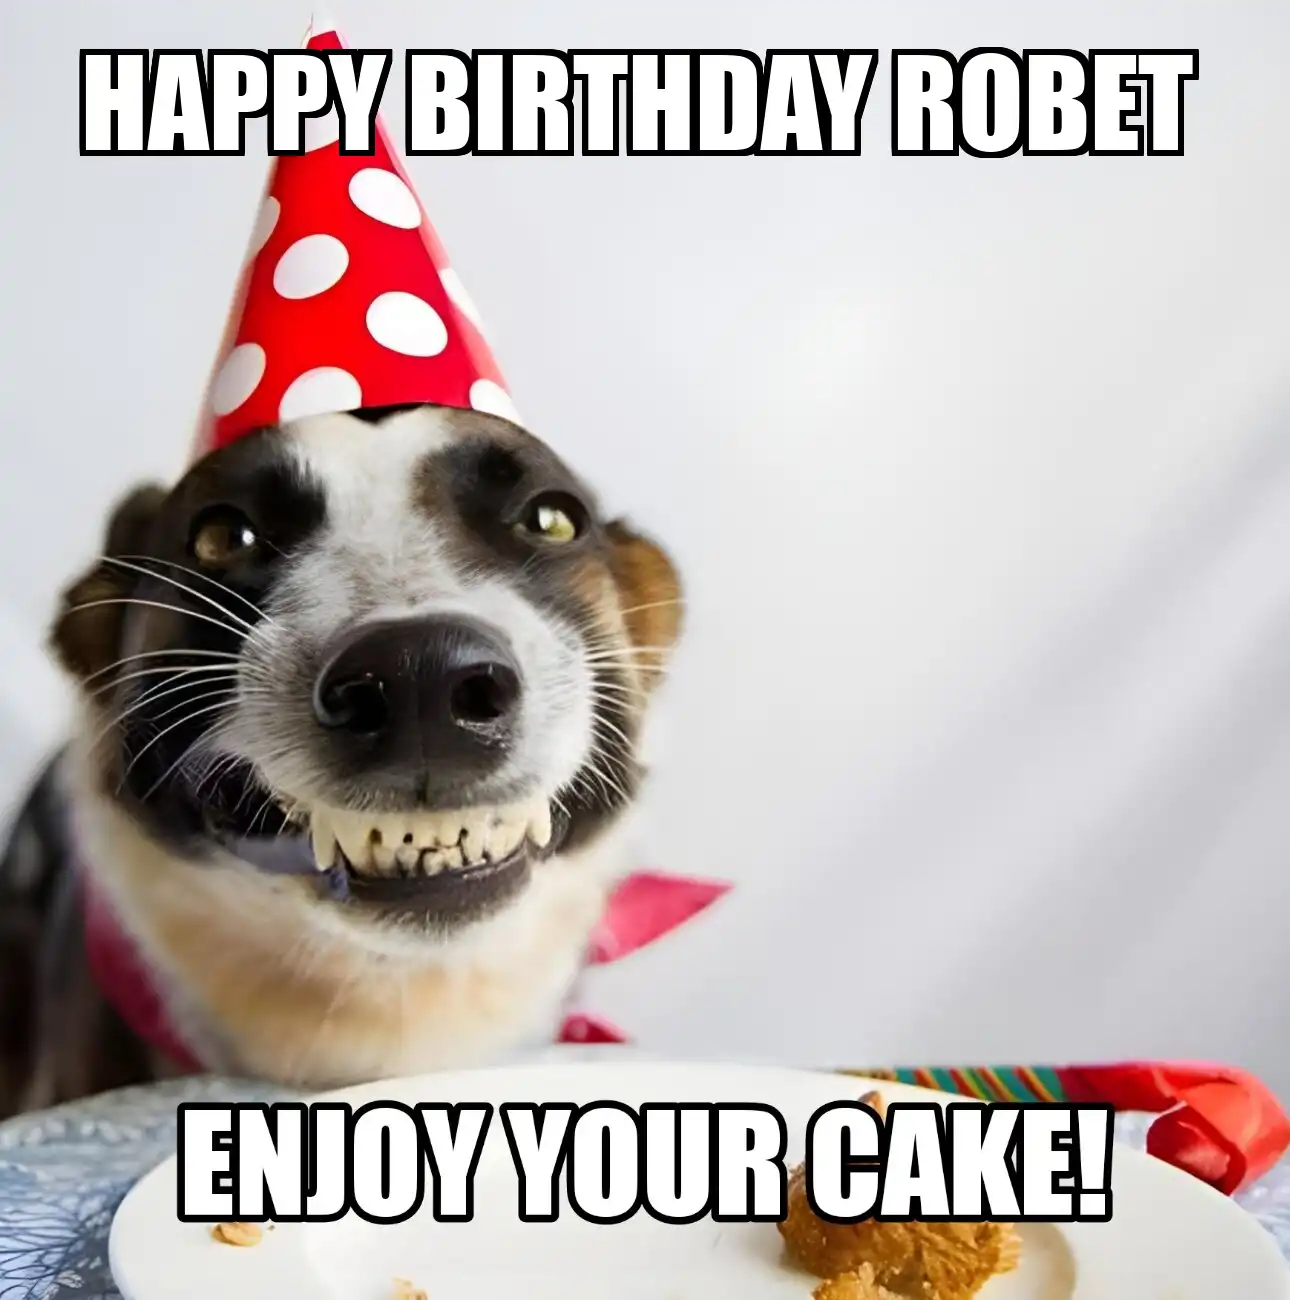 Happy Birthday Robet Enjoy Your Cake Dog Meme